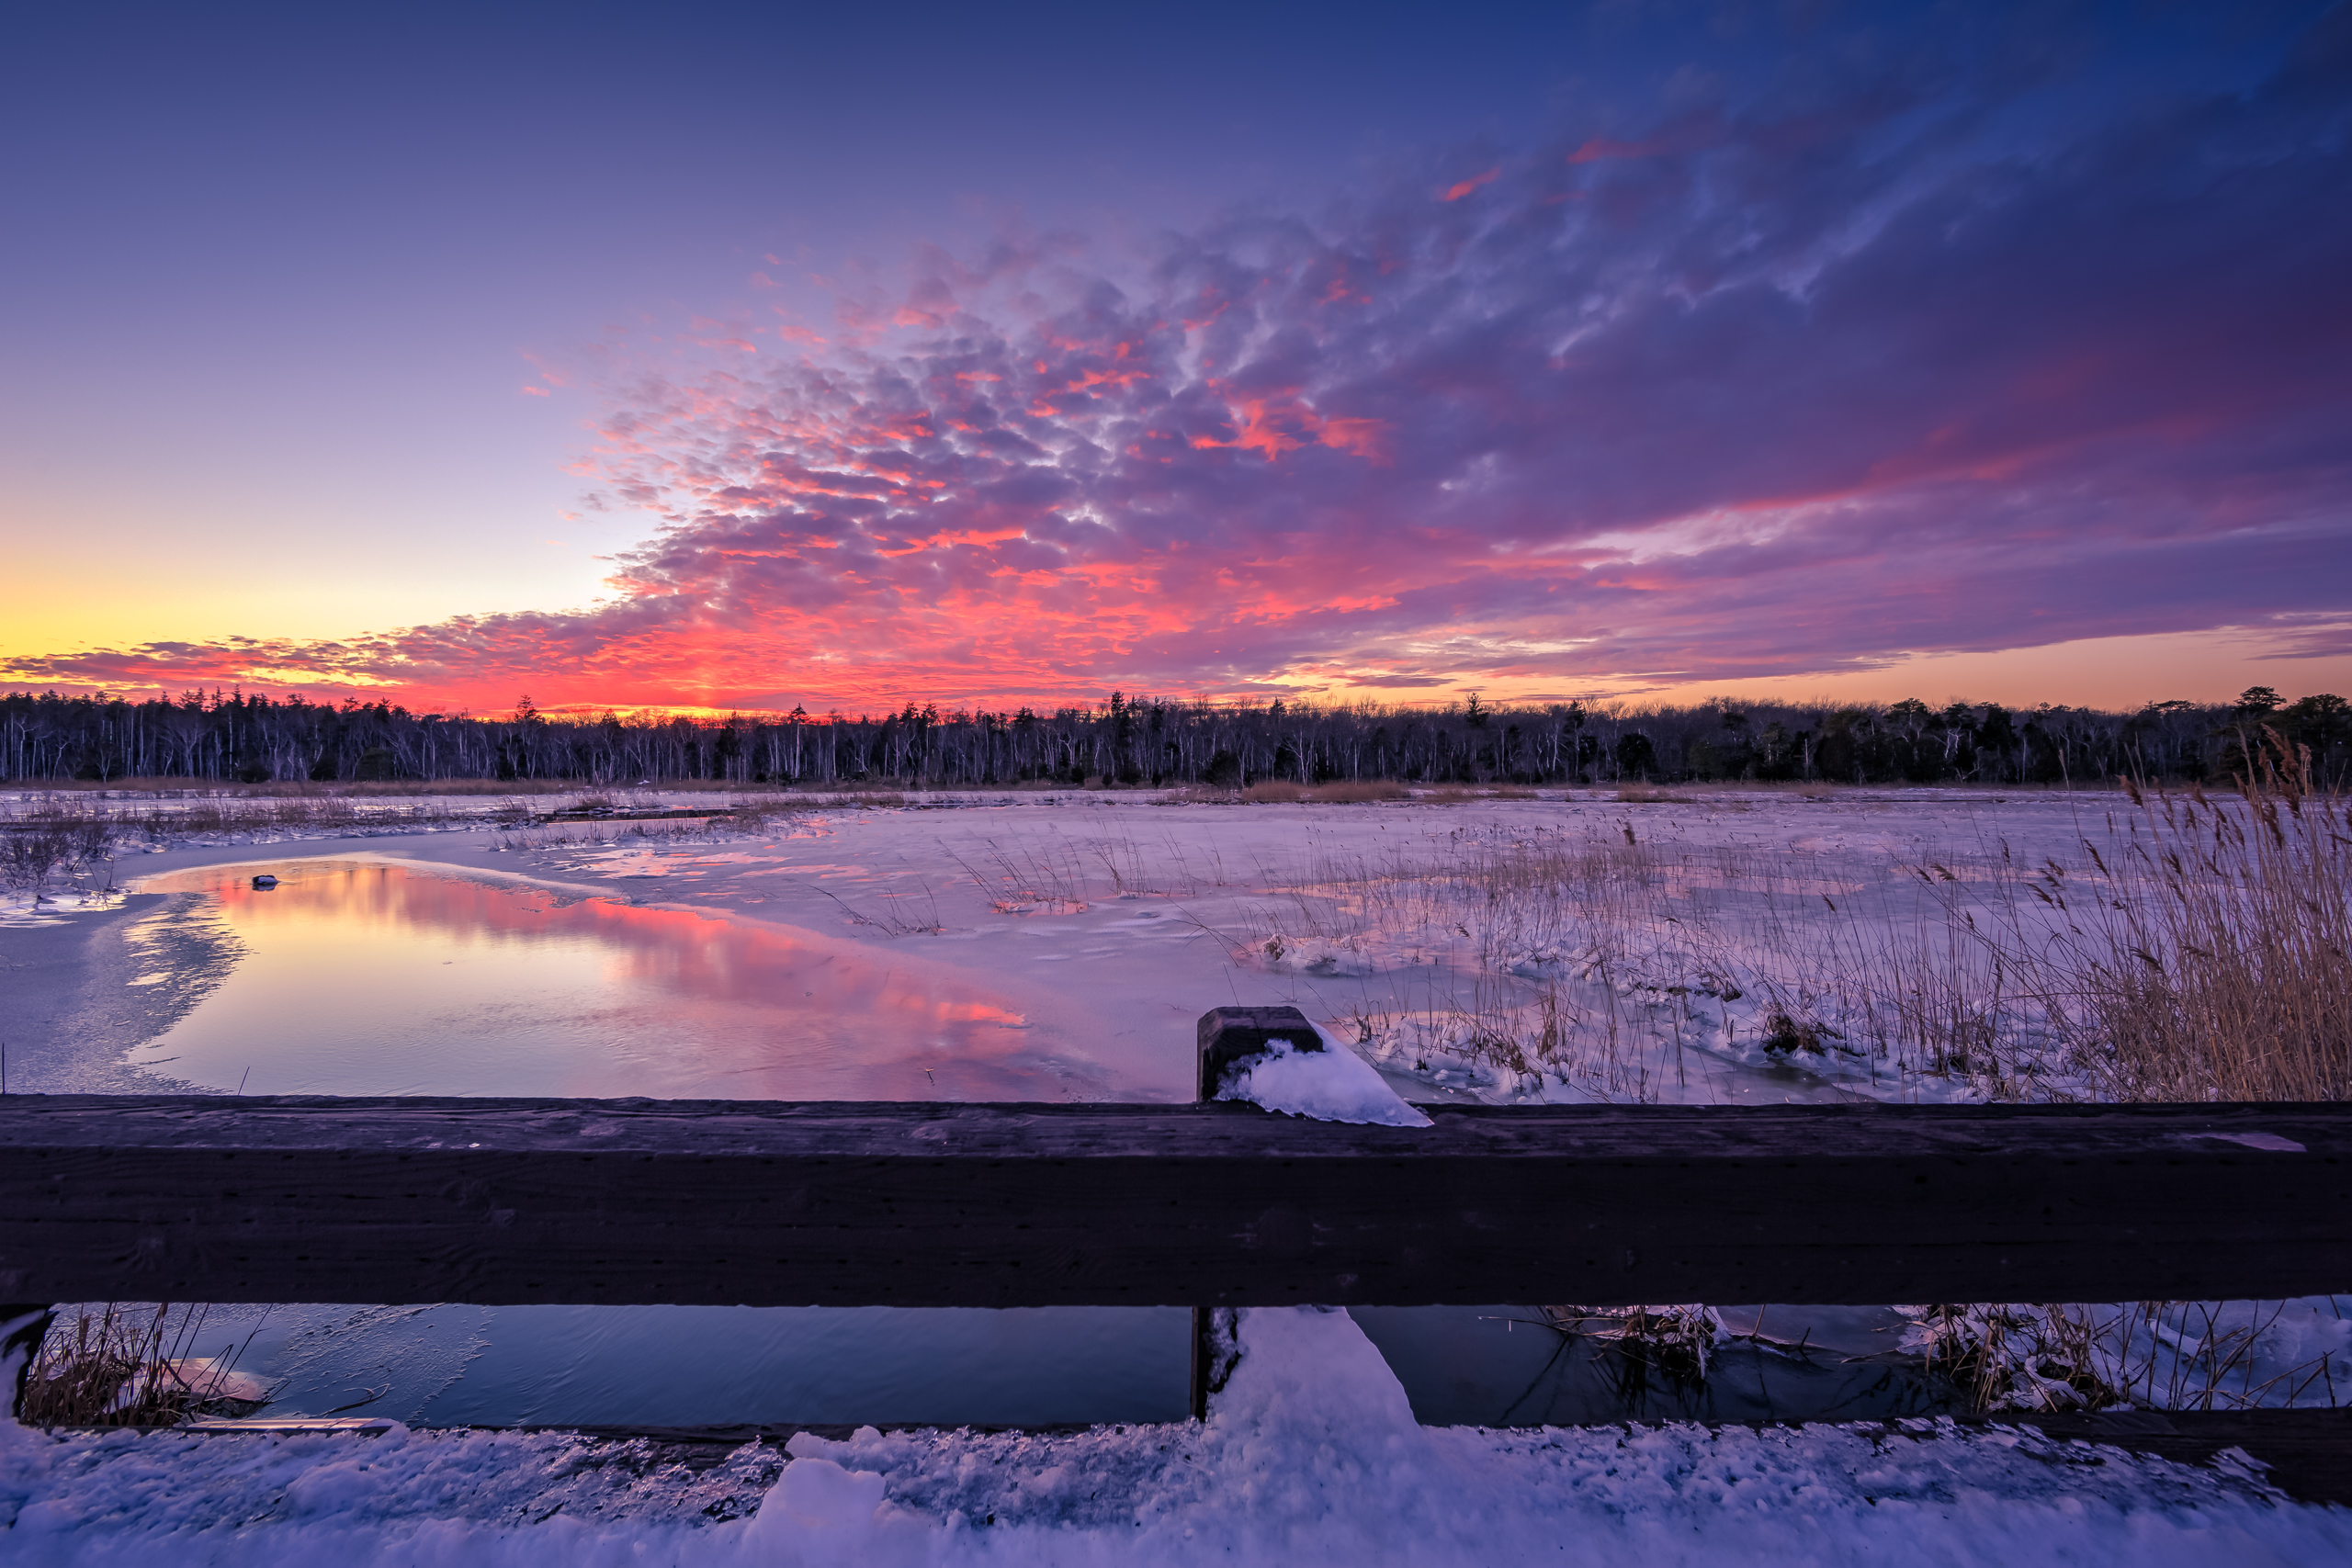 Sunset photograph taken atop a bridge overlooking a frozen marsh a day after Winter Storm Jonas